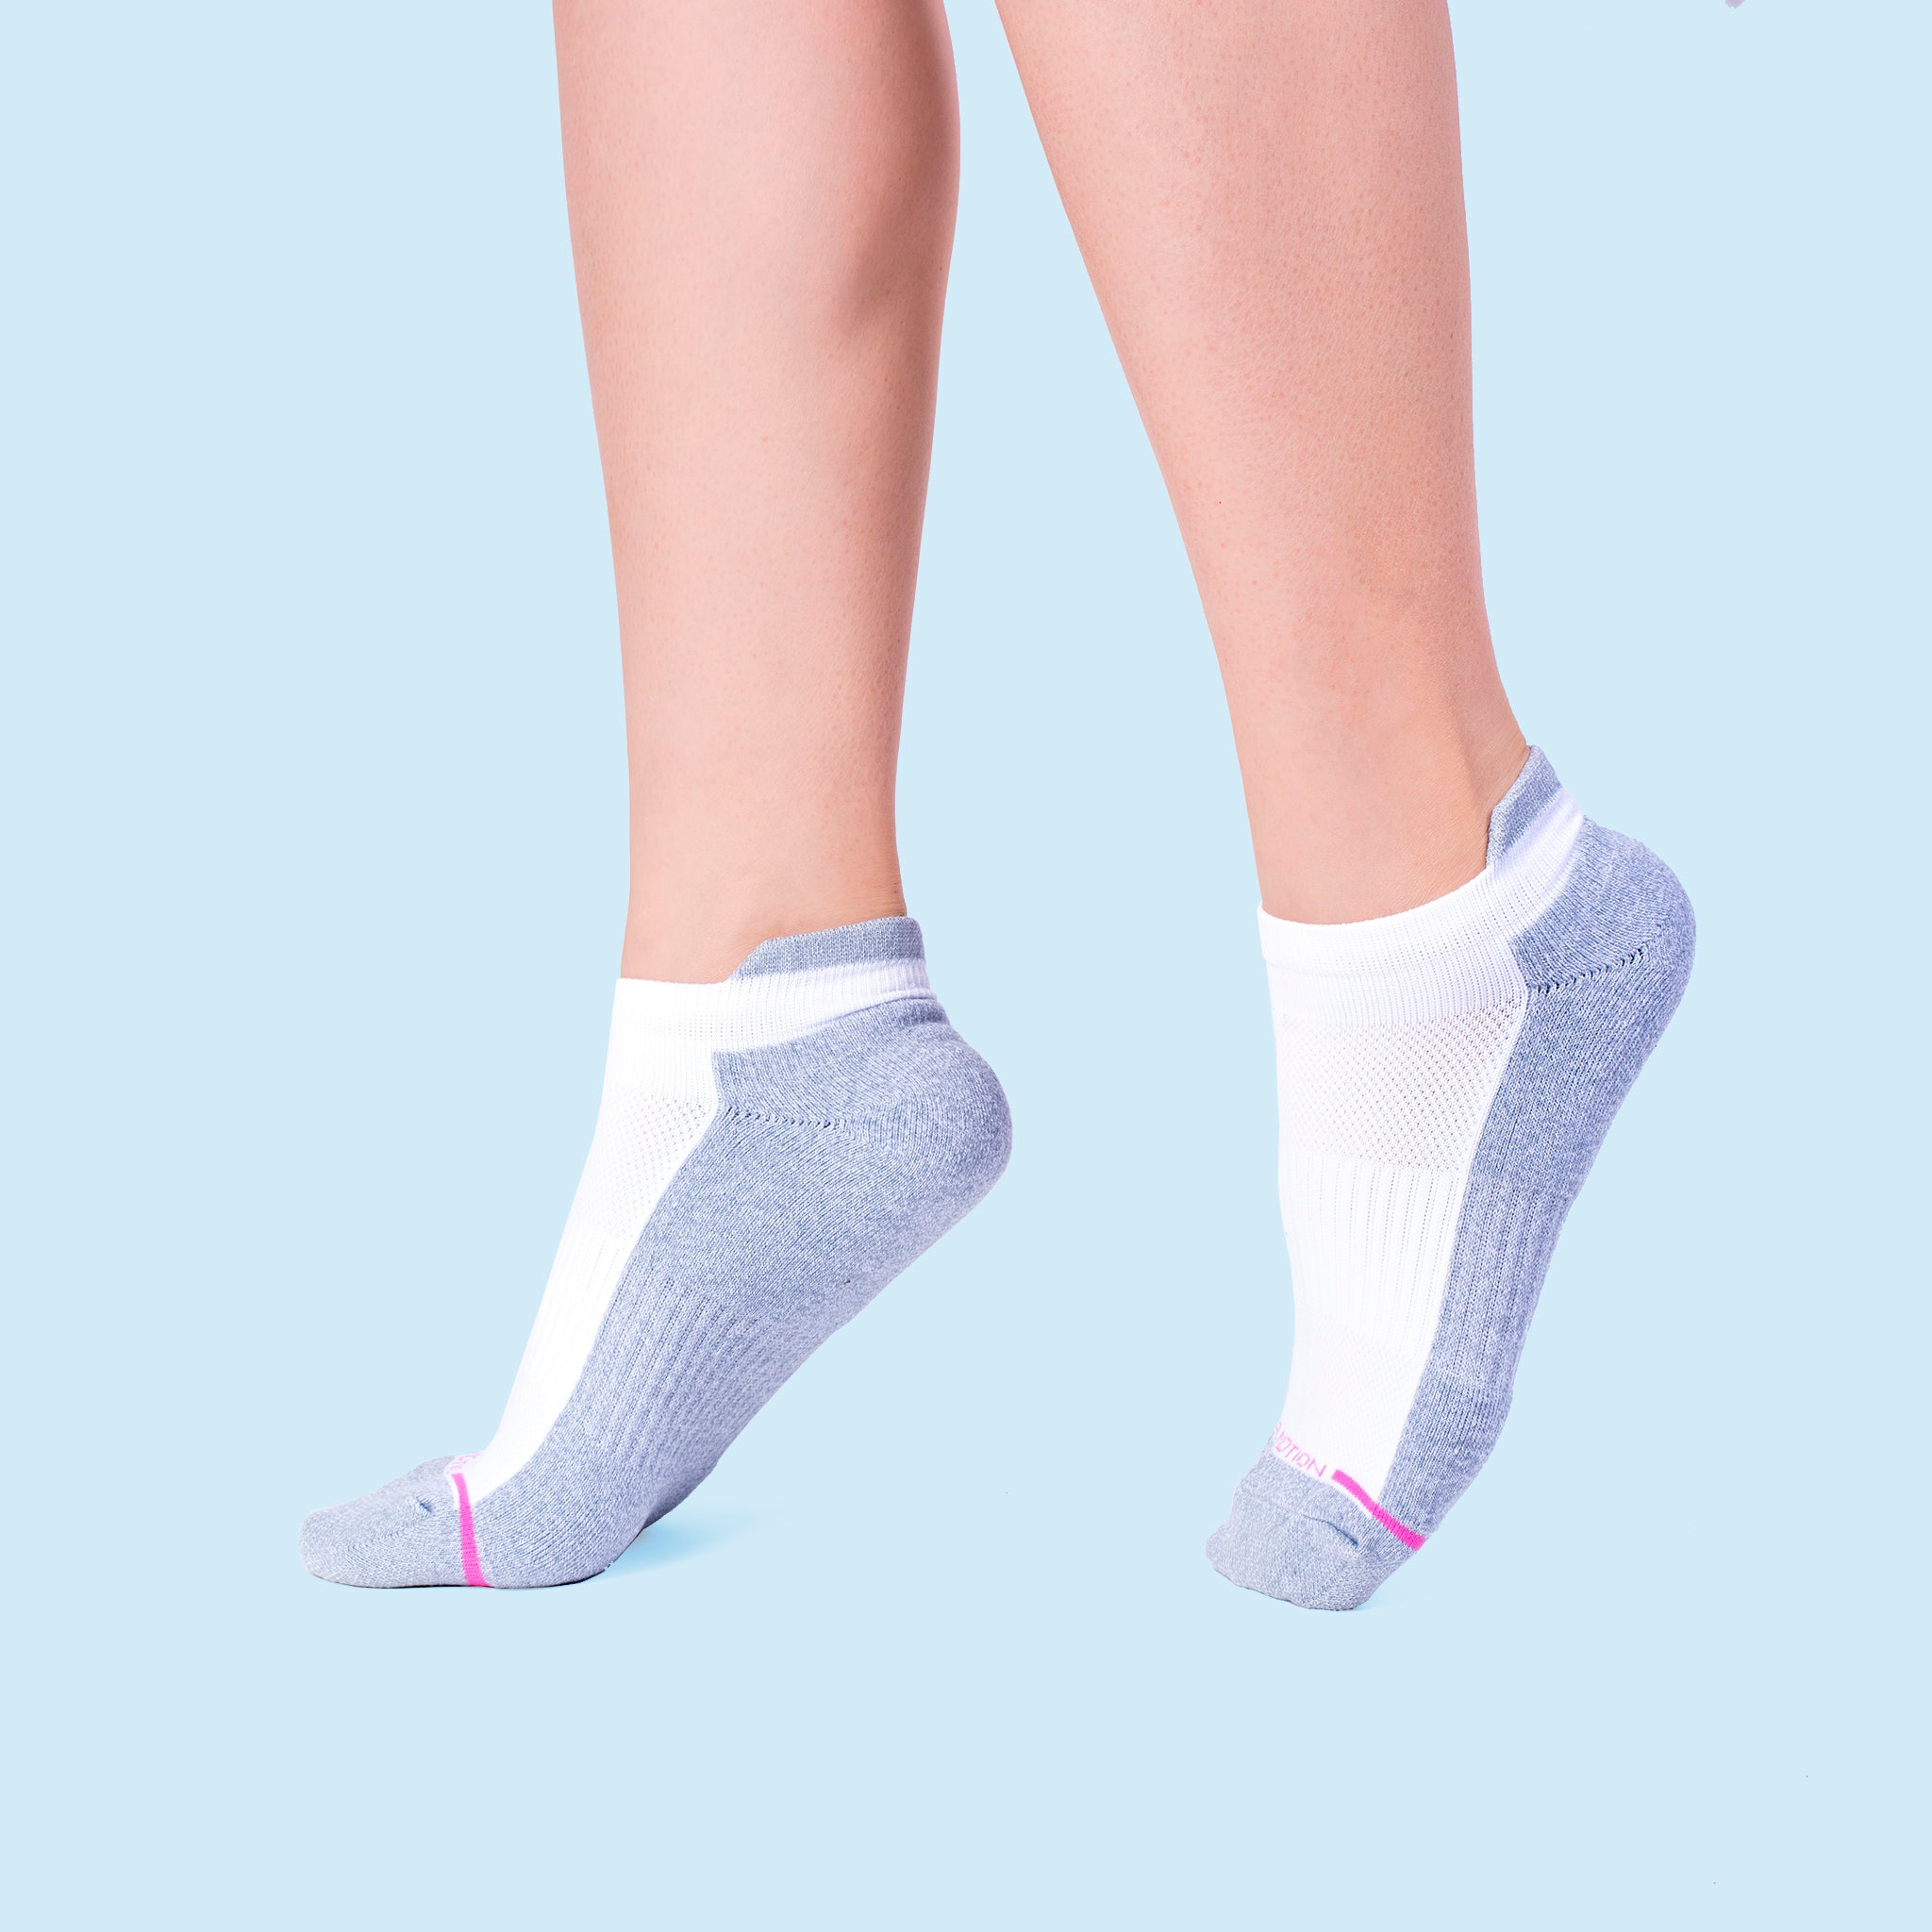 Solid | Liner Compression Socks For Women